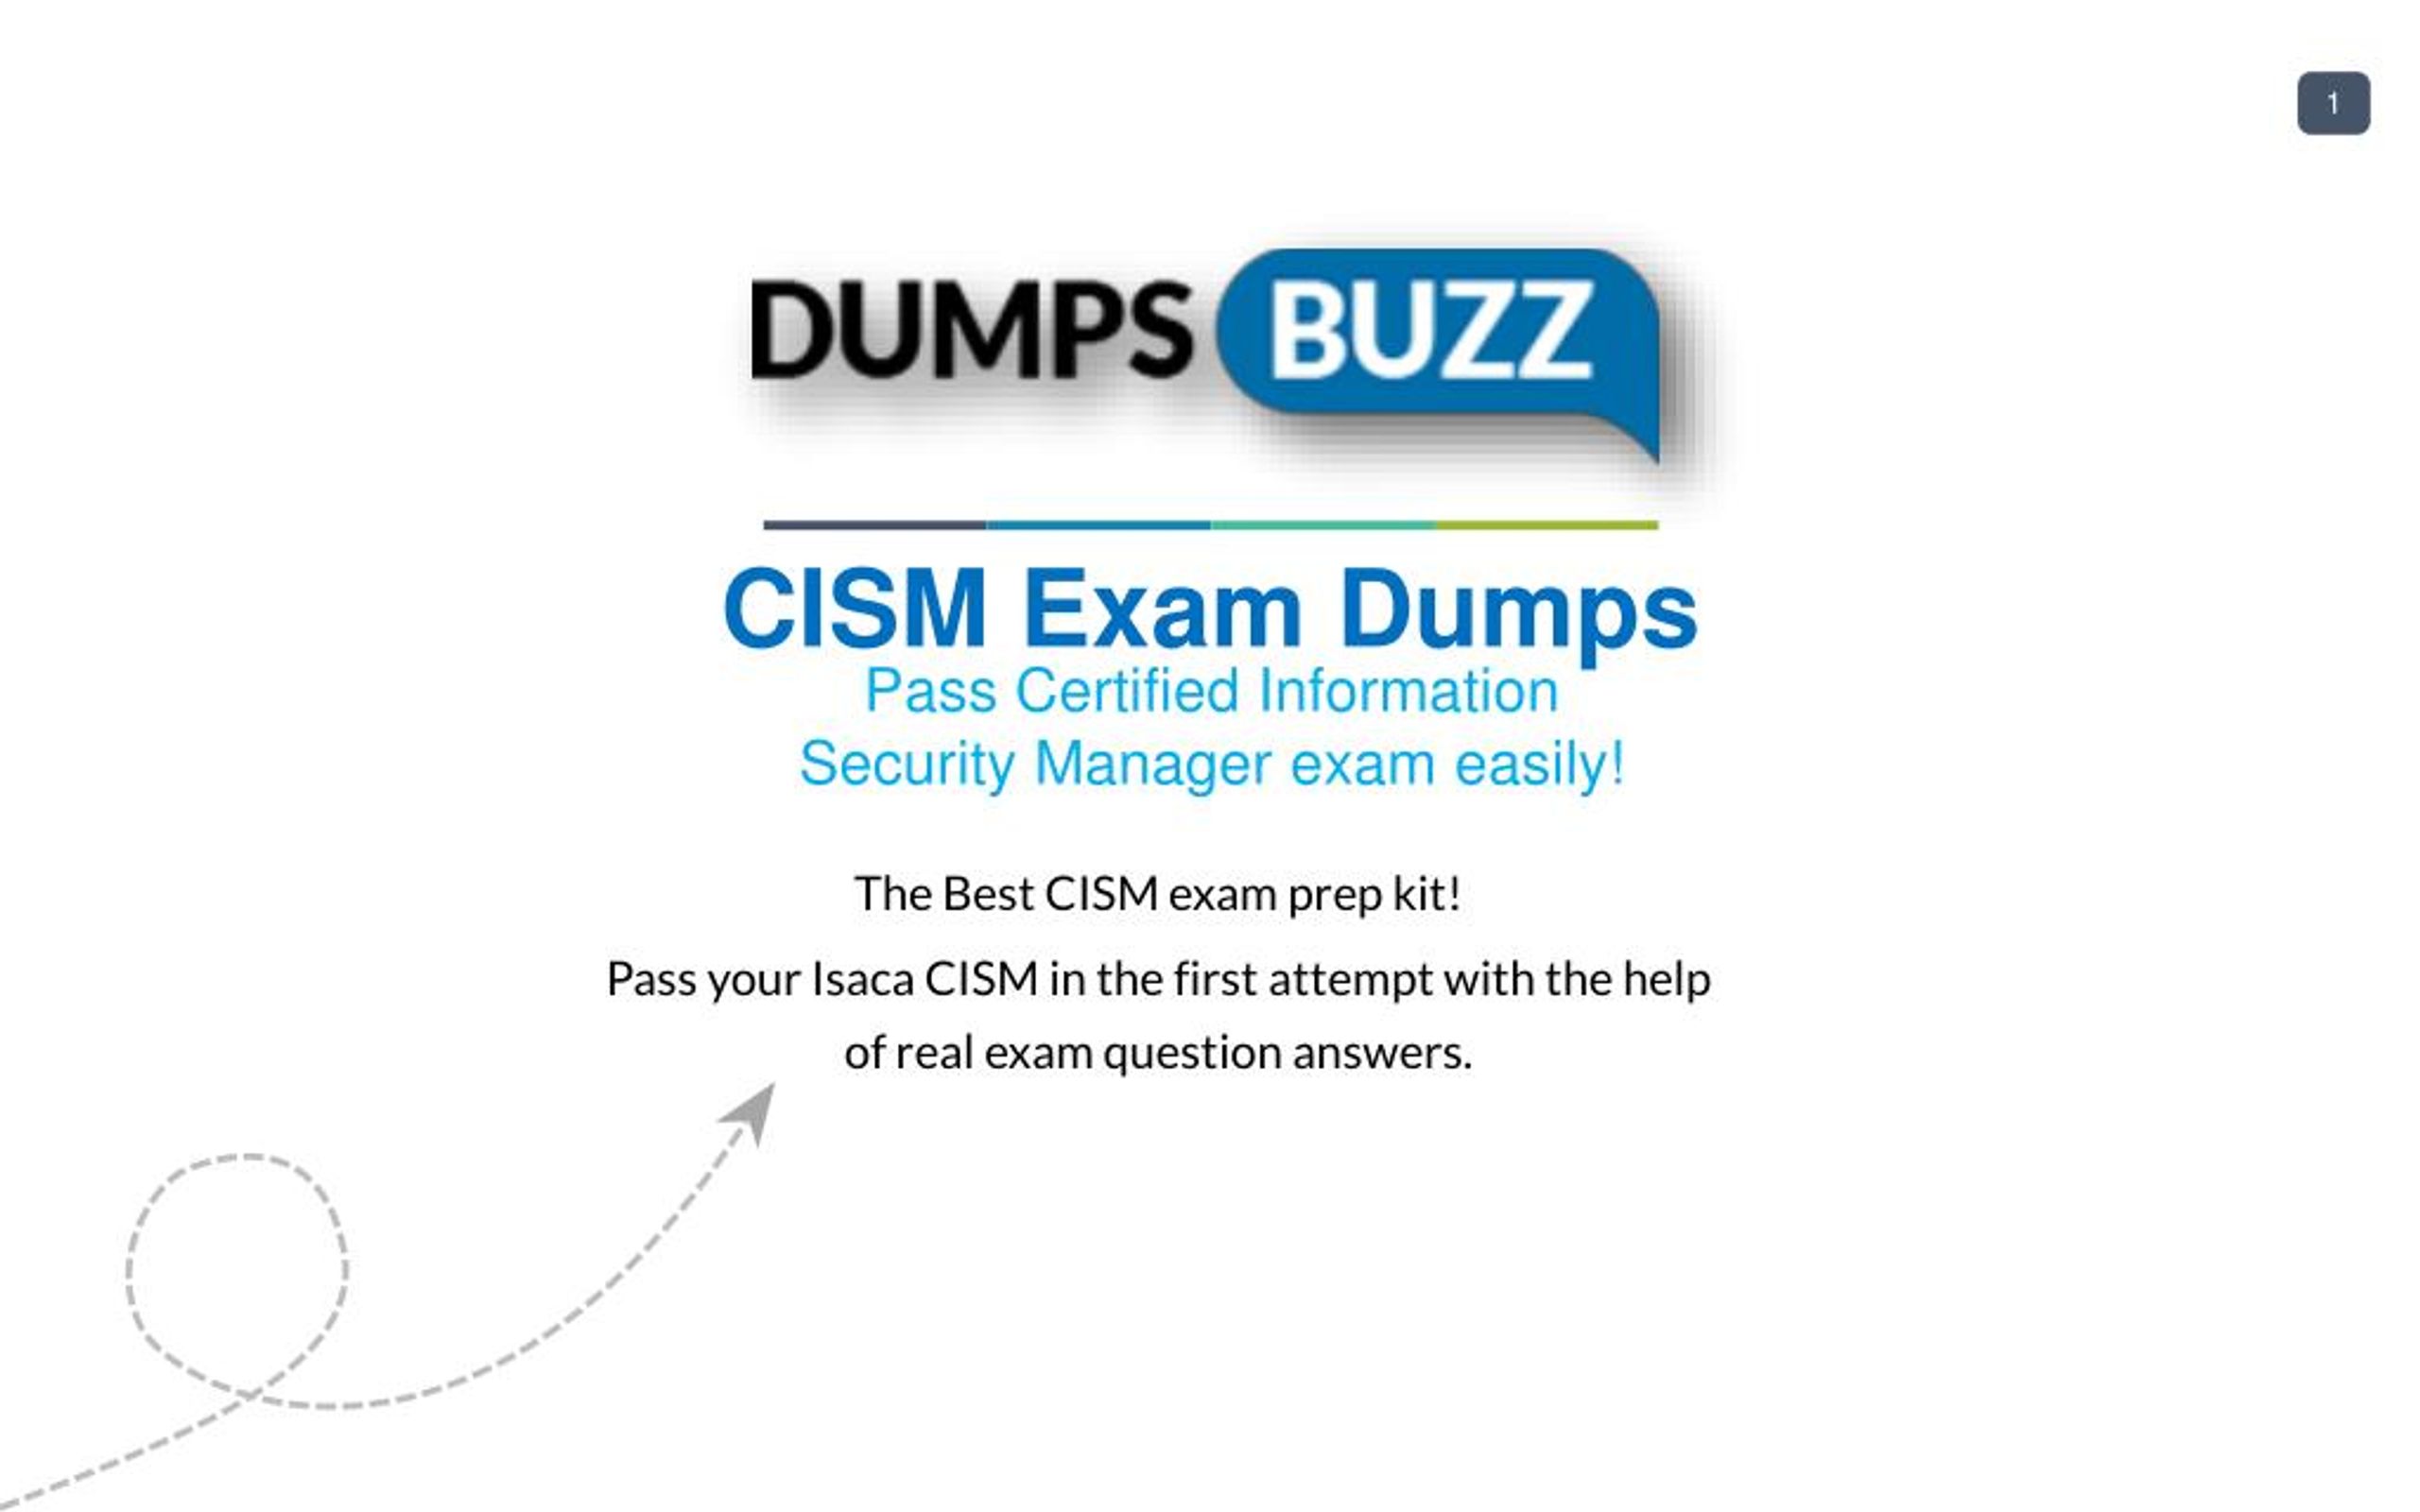 CASM-001 Reasonable Exam Price